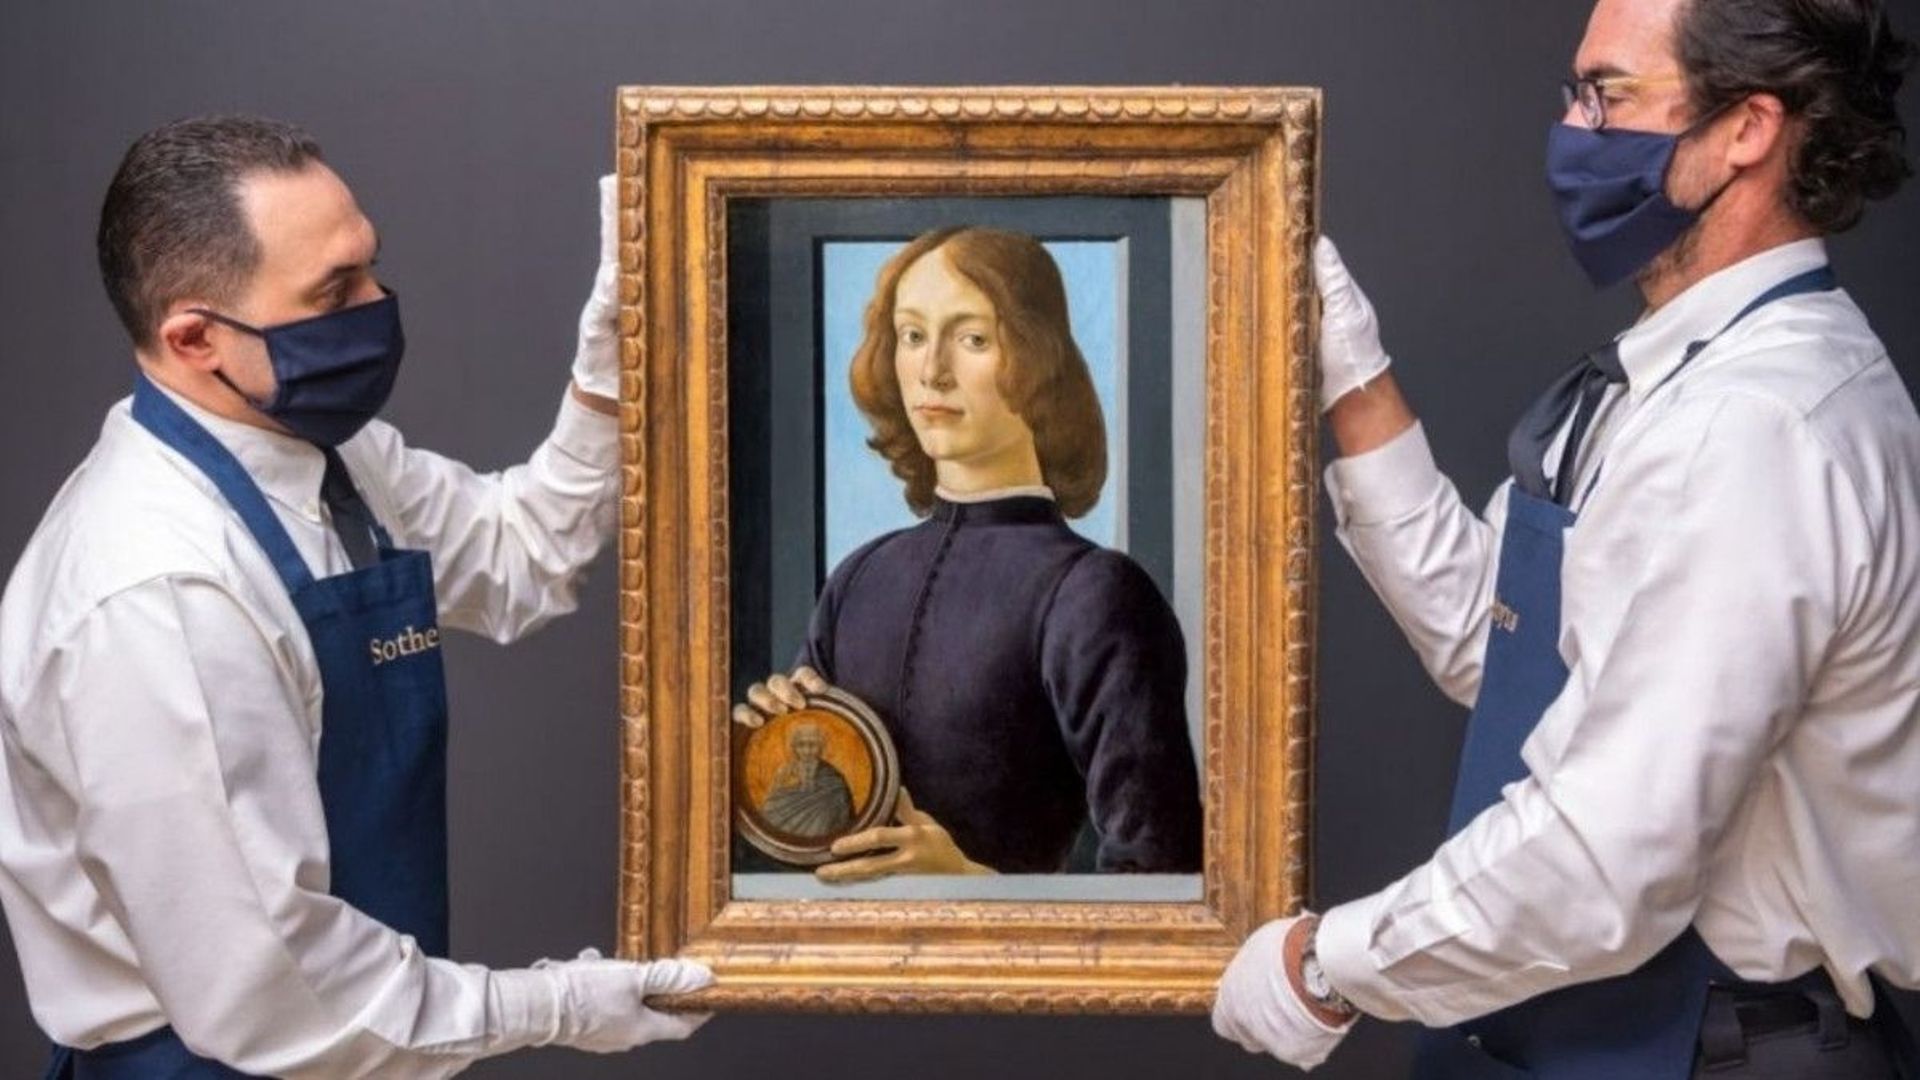 Le Portrait de jeune homme de Sandro Botticelli est la deuxième peinture ancienne la plus chère du monde après le Salvator Mundi de Léonard de Vinci.